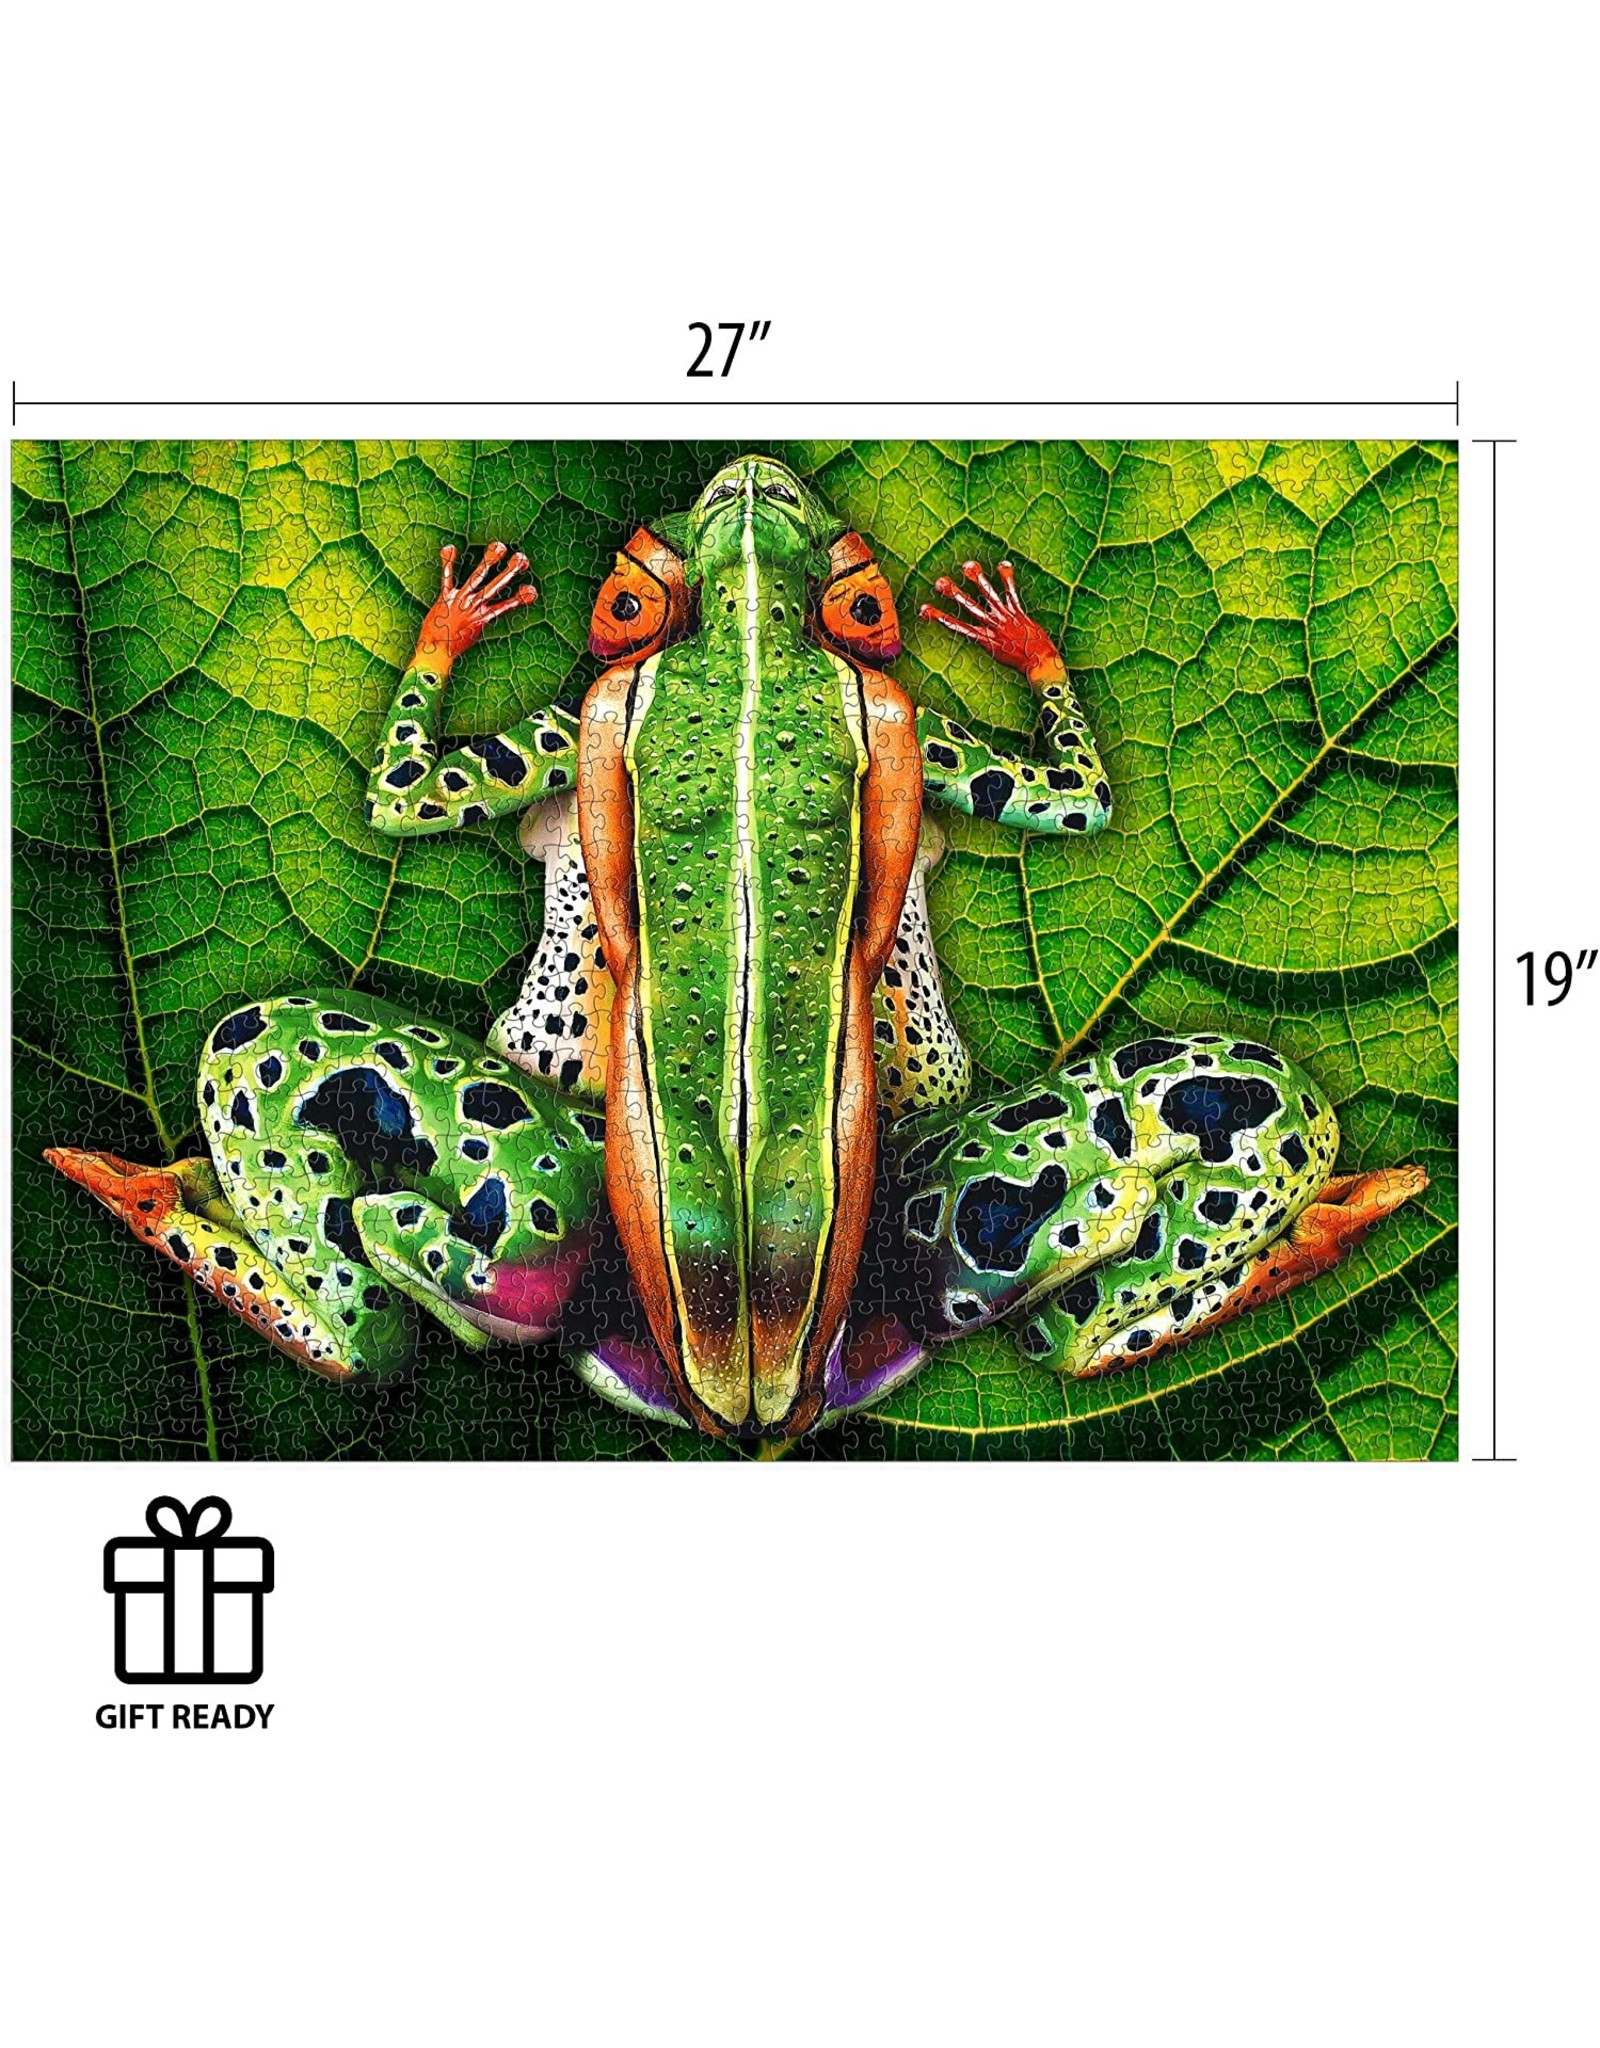 Johannes Stotter Frog Body Art 1000 pc